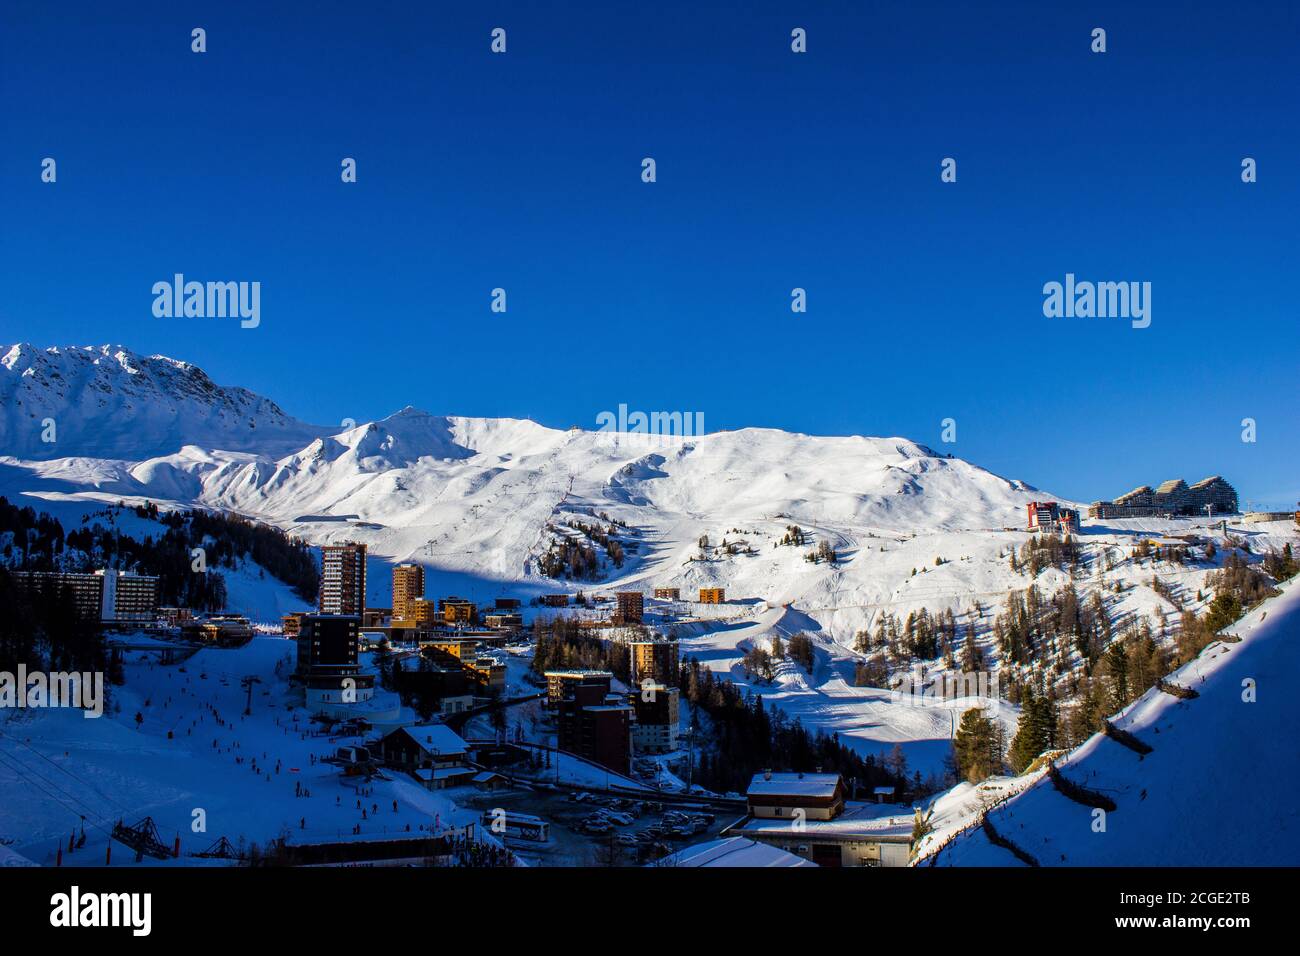 La Plagne, France - 8 janvier 2015 : vue sur la station de ski de la Plagne, Alpes françaises Banque D'Images